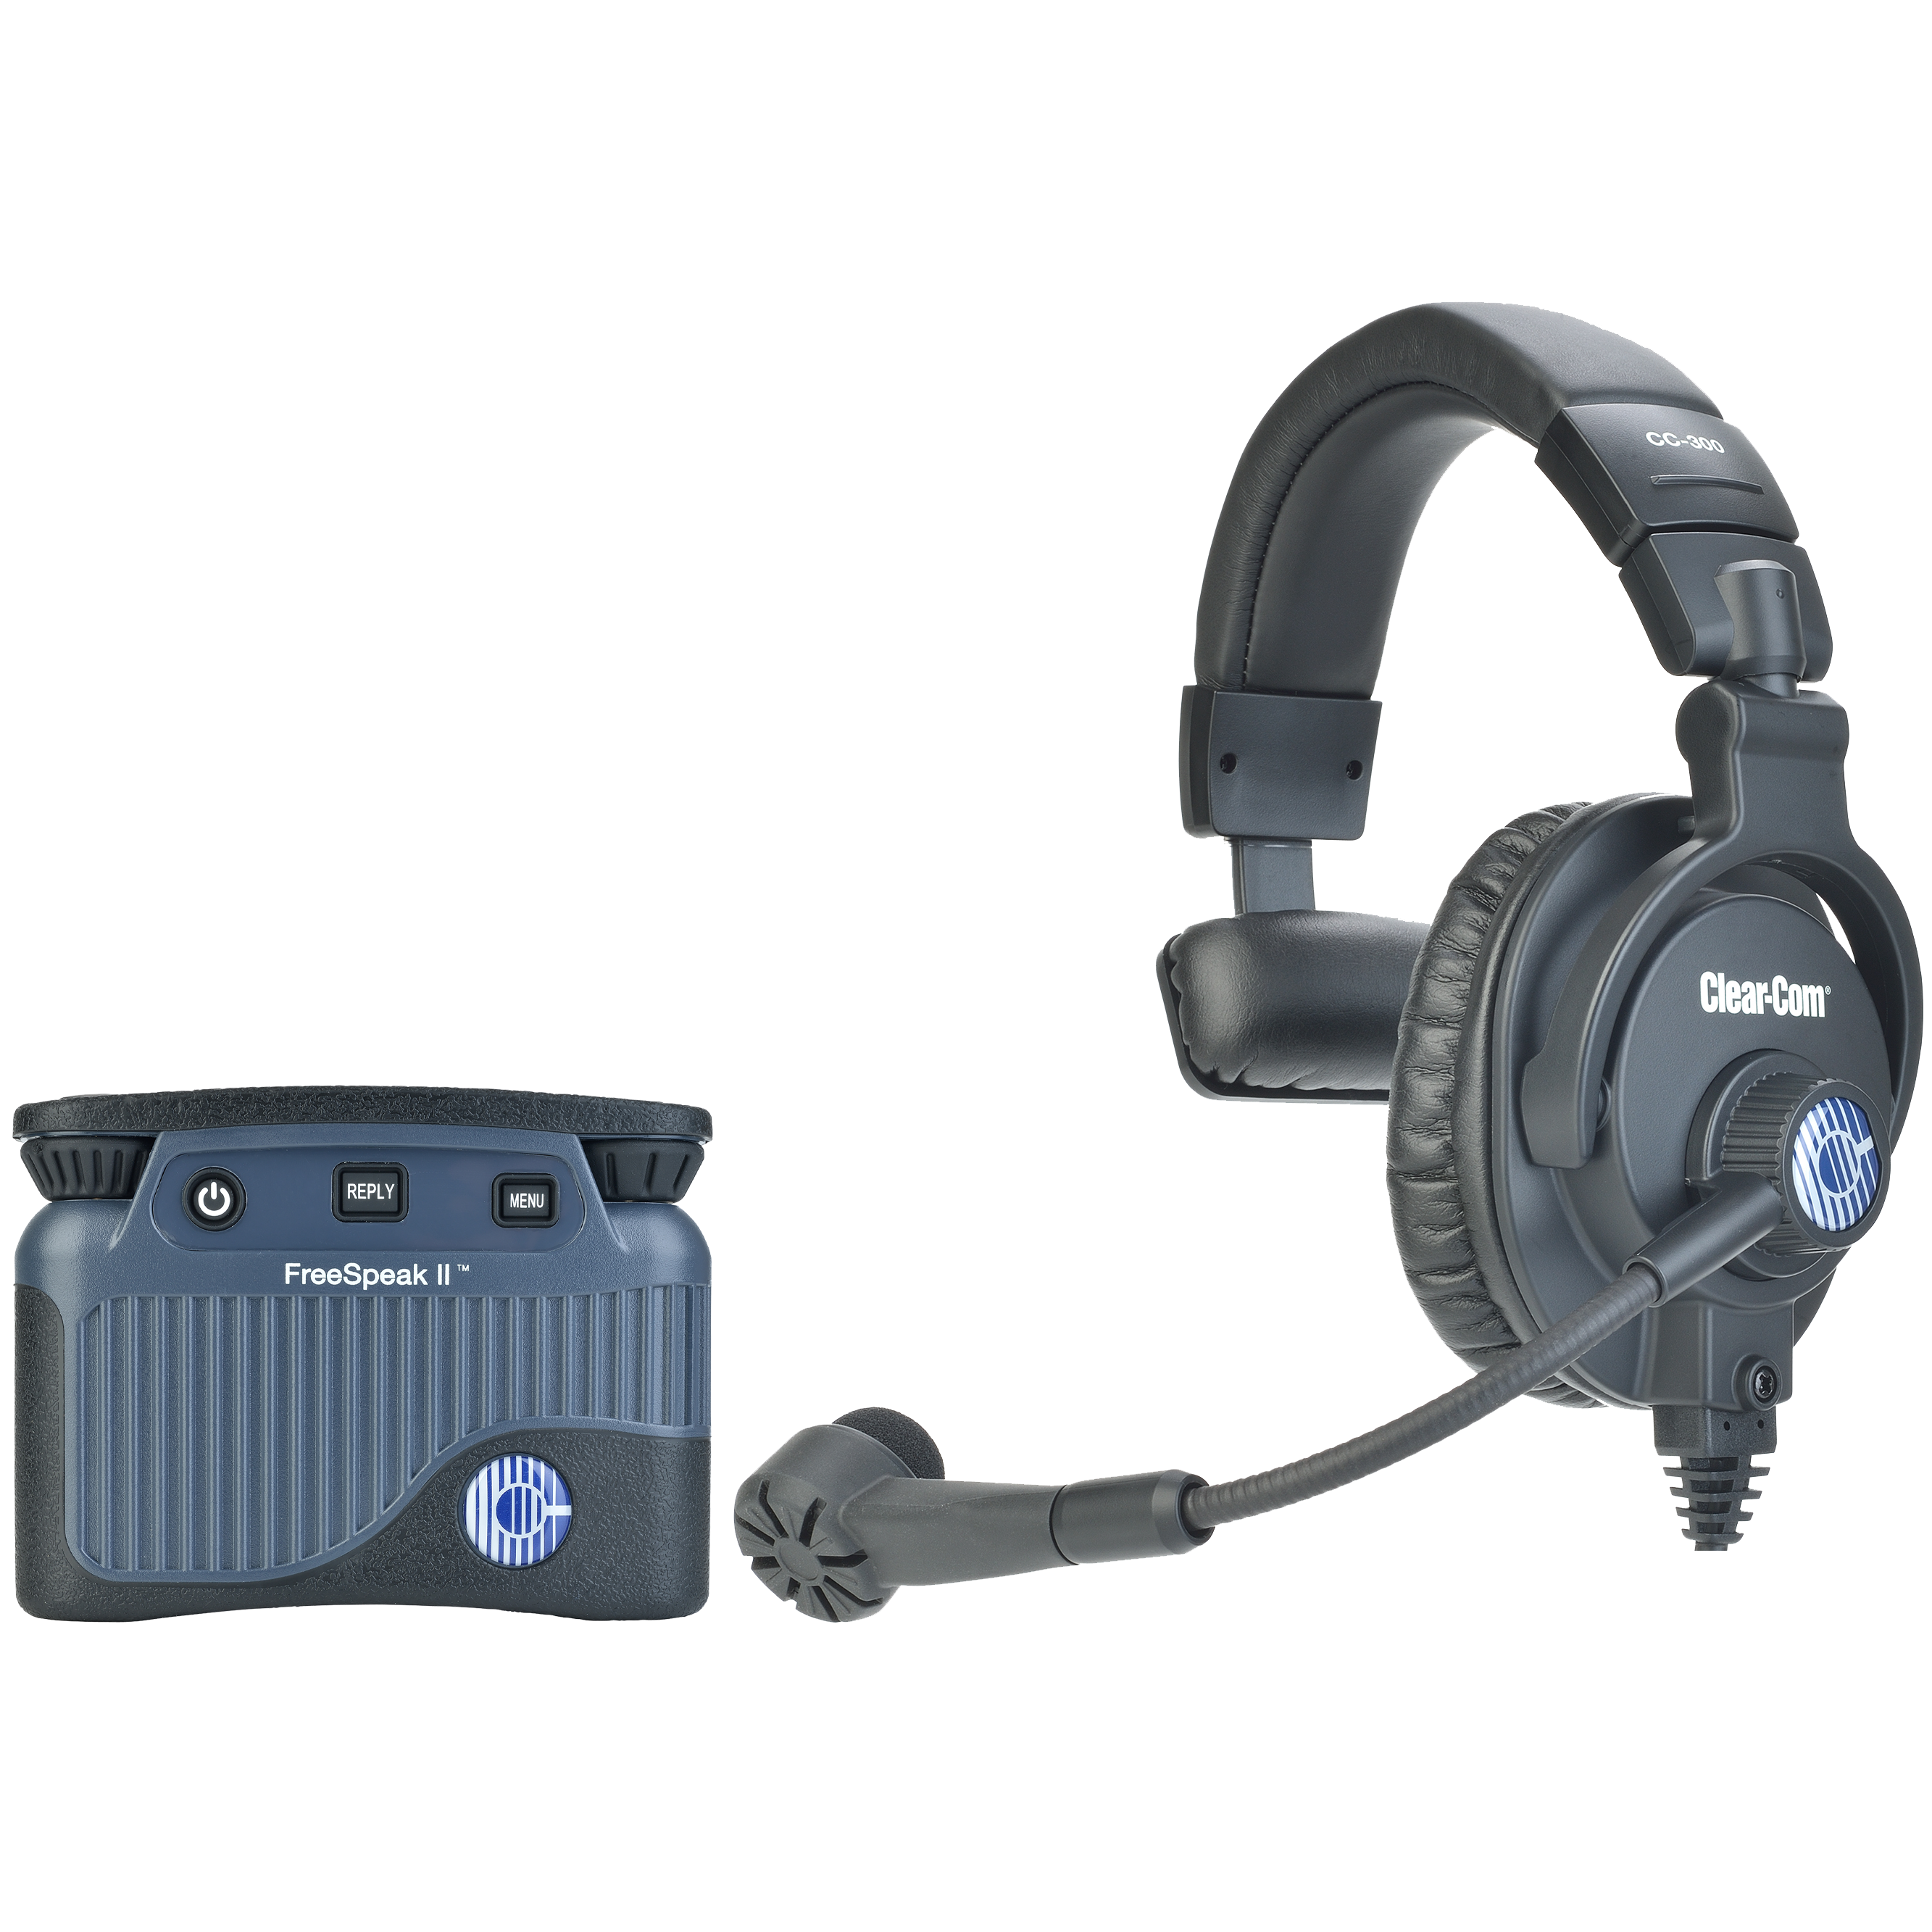 Clear-Com FreeSpeak II Beltpack with Headset